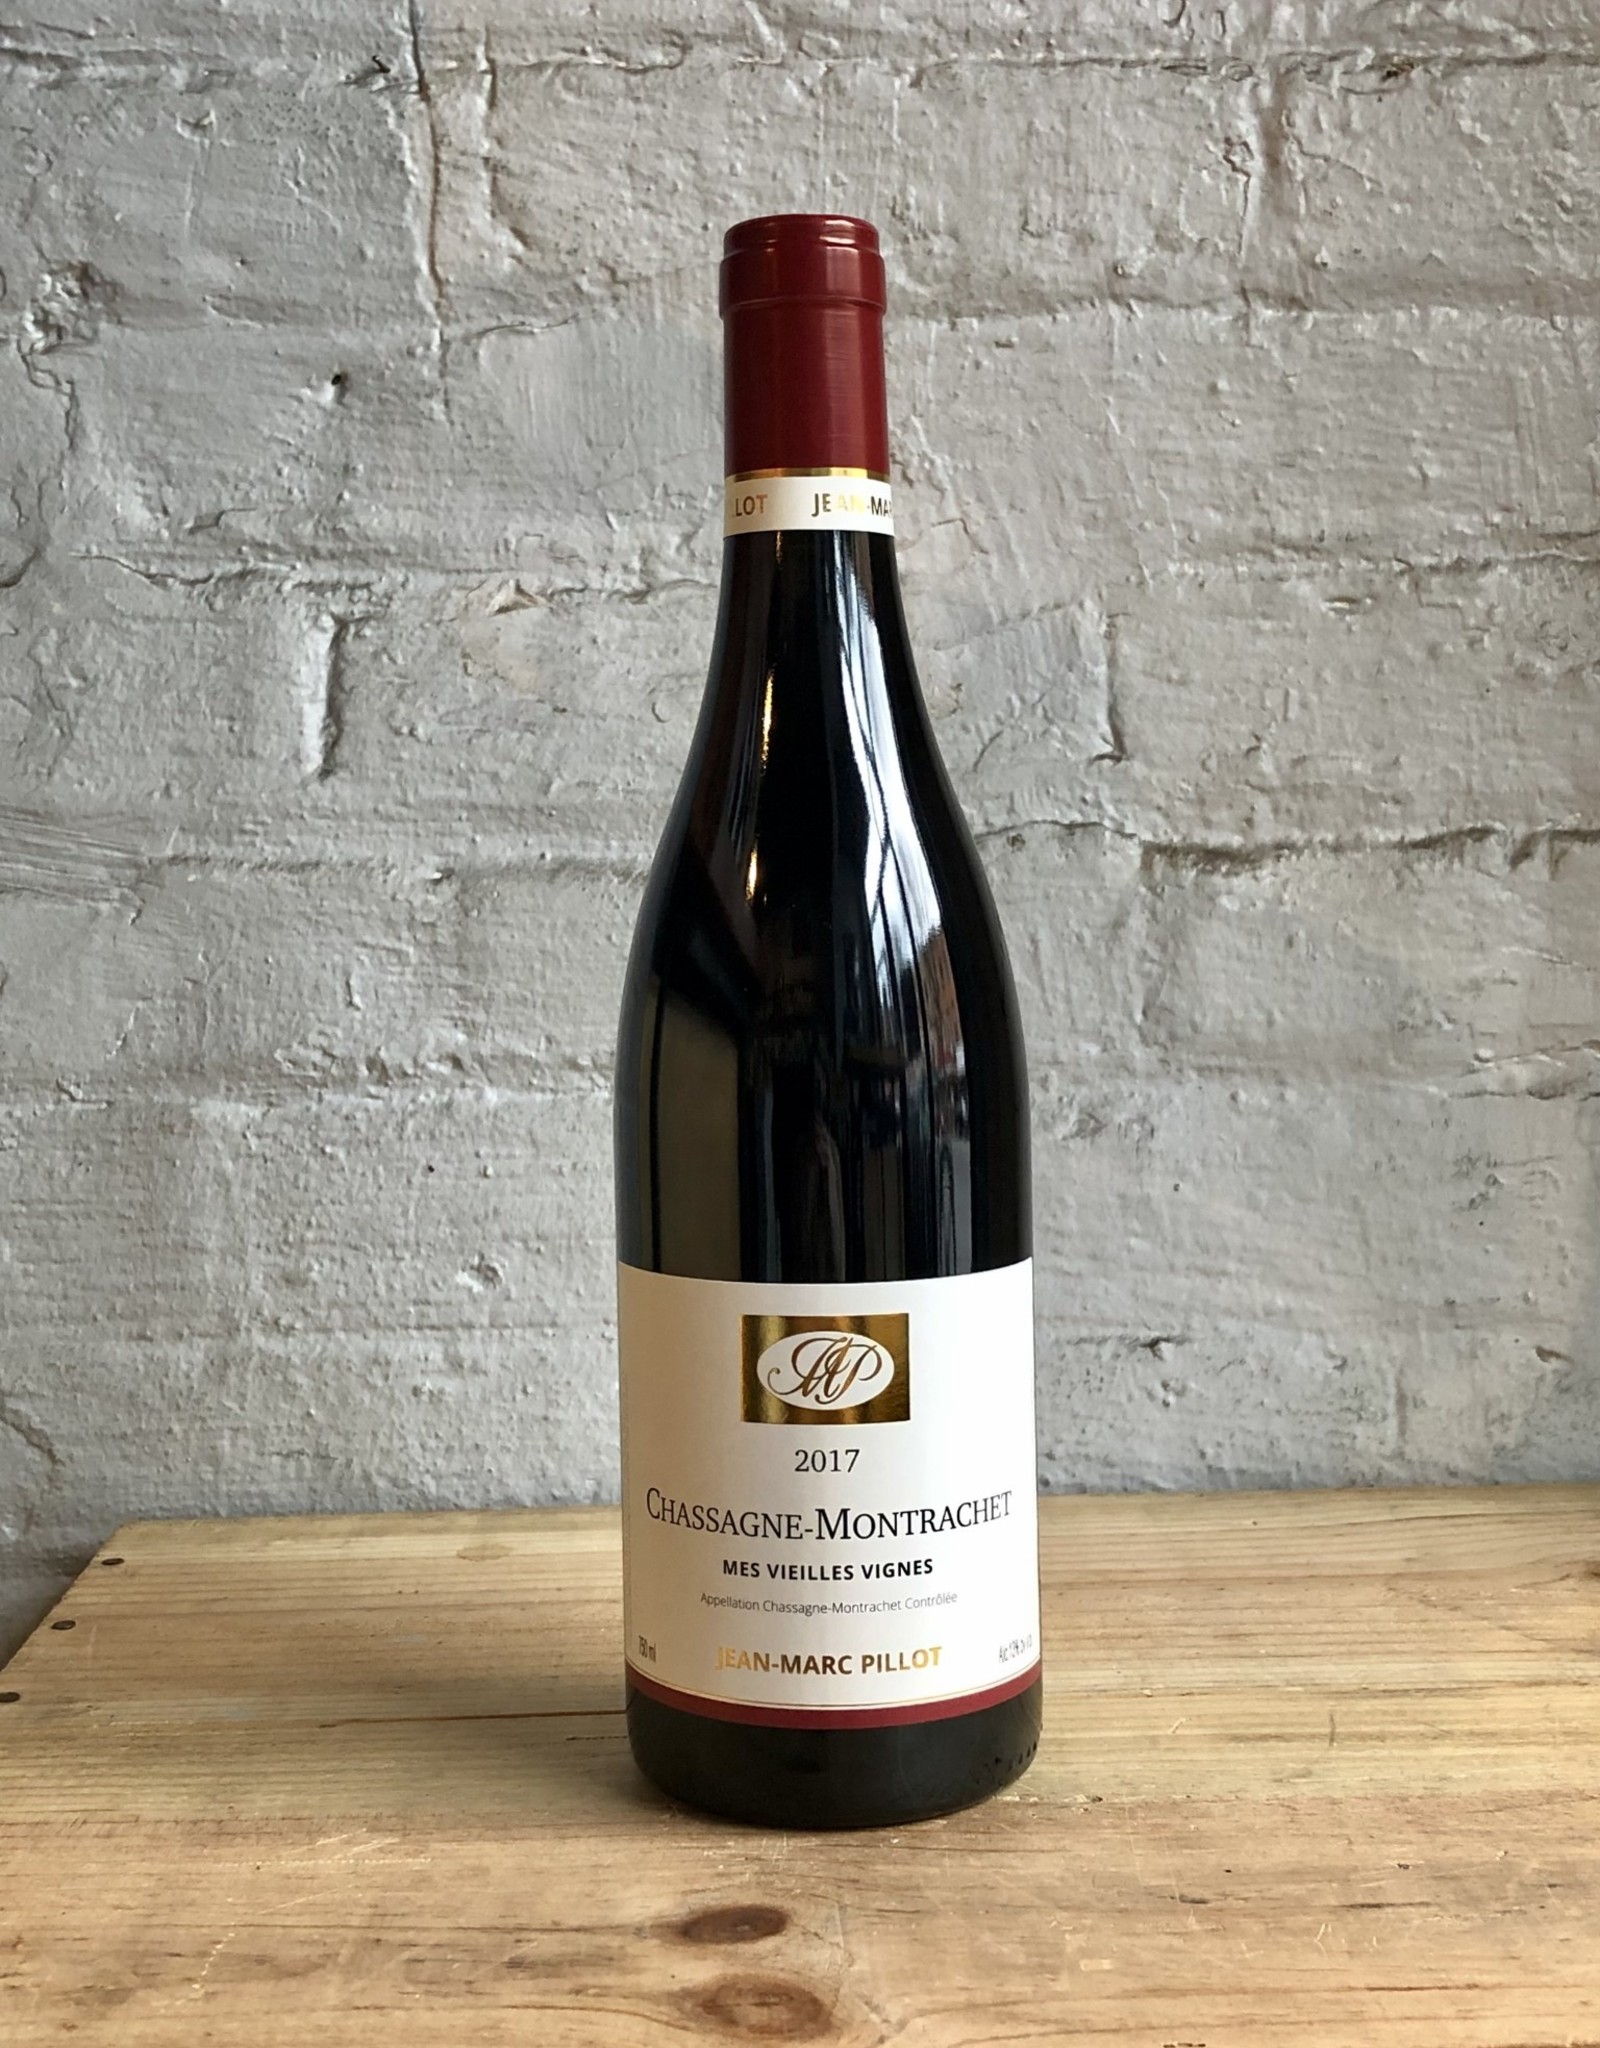 Wine 2017 Jean-Marc Pillot Chassagne-Montrachet Rouge Mes Vieilles Vignes - Burgundy, France (750ml)